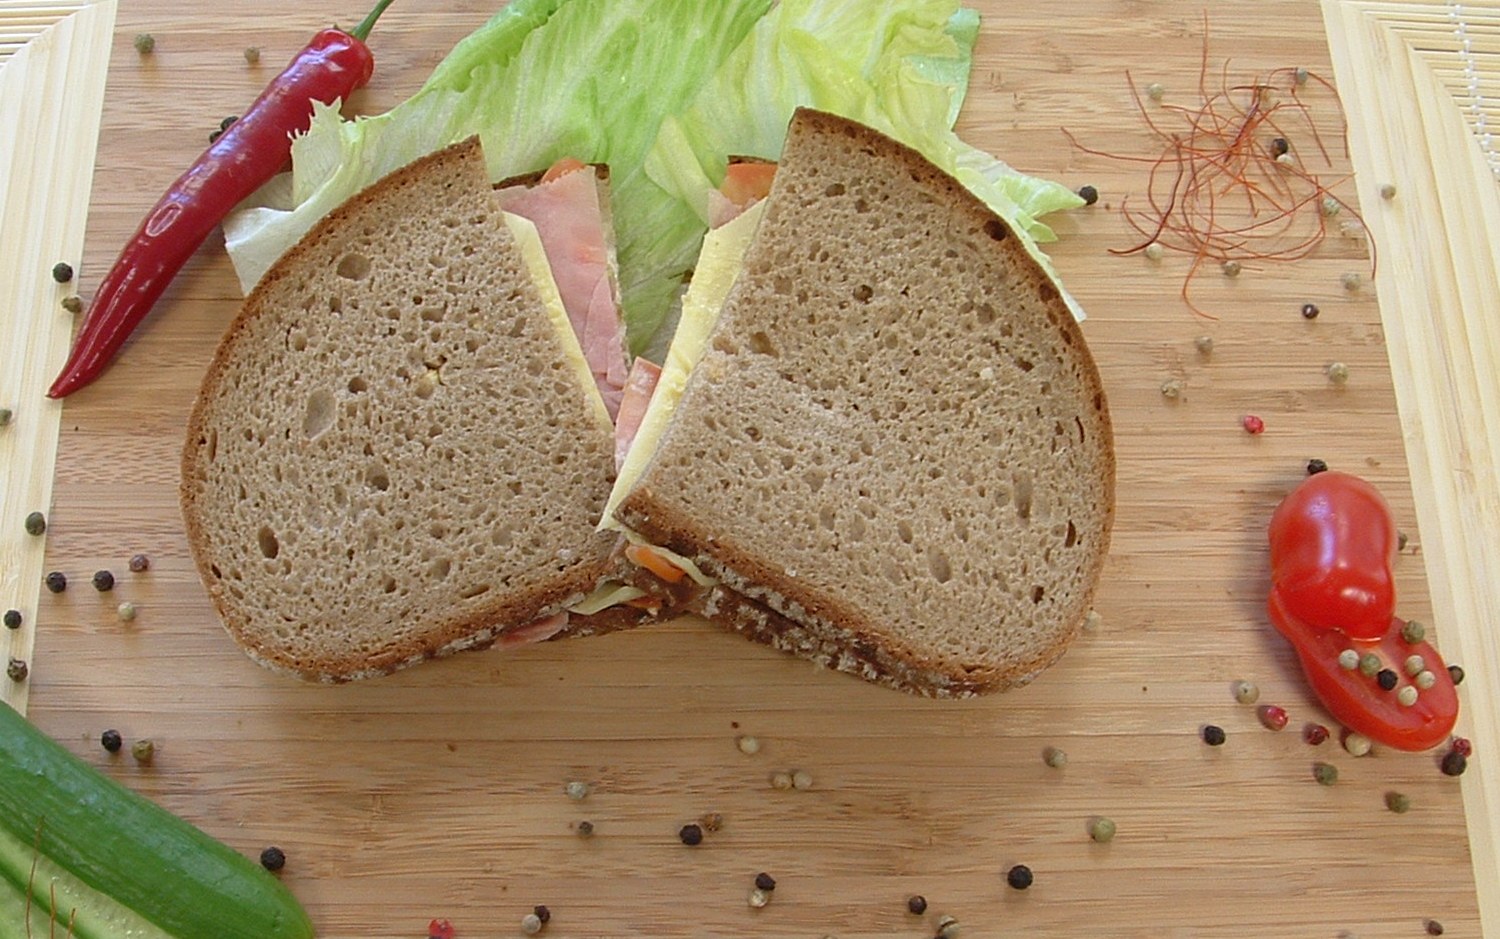 Хлеб с маслом можно есть. Хлеб для бутербродов. Бутерброды с ржаным хлебом. Бутерброд хлеб с маслом. Бутерброд с подсолнечным маслом.